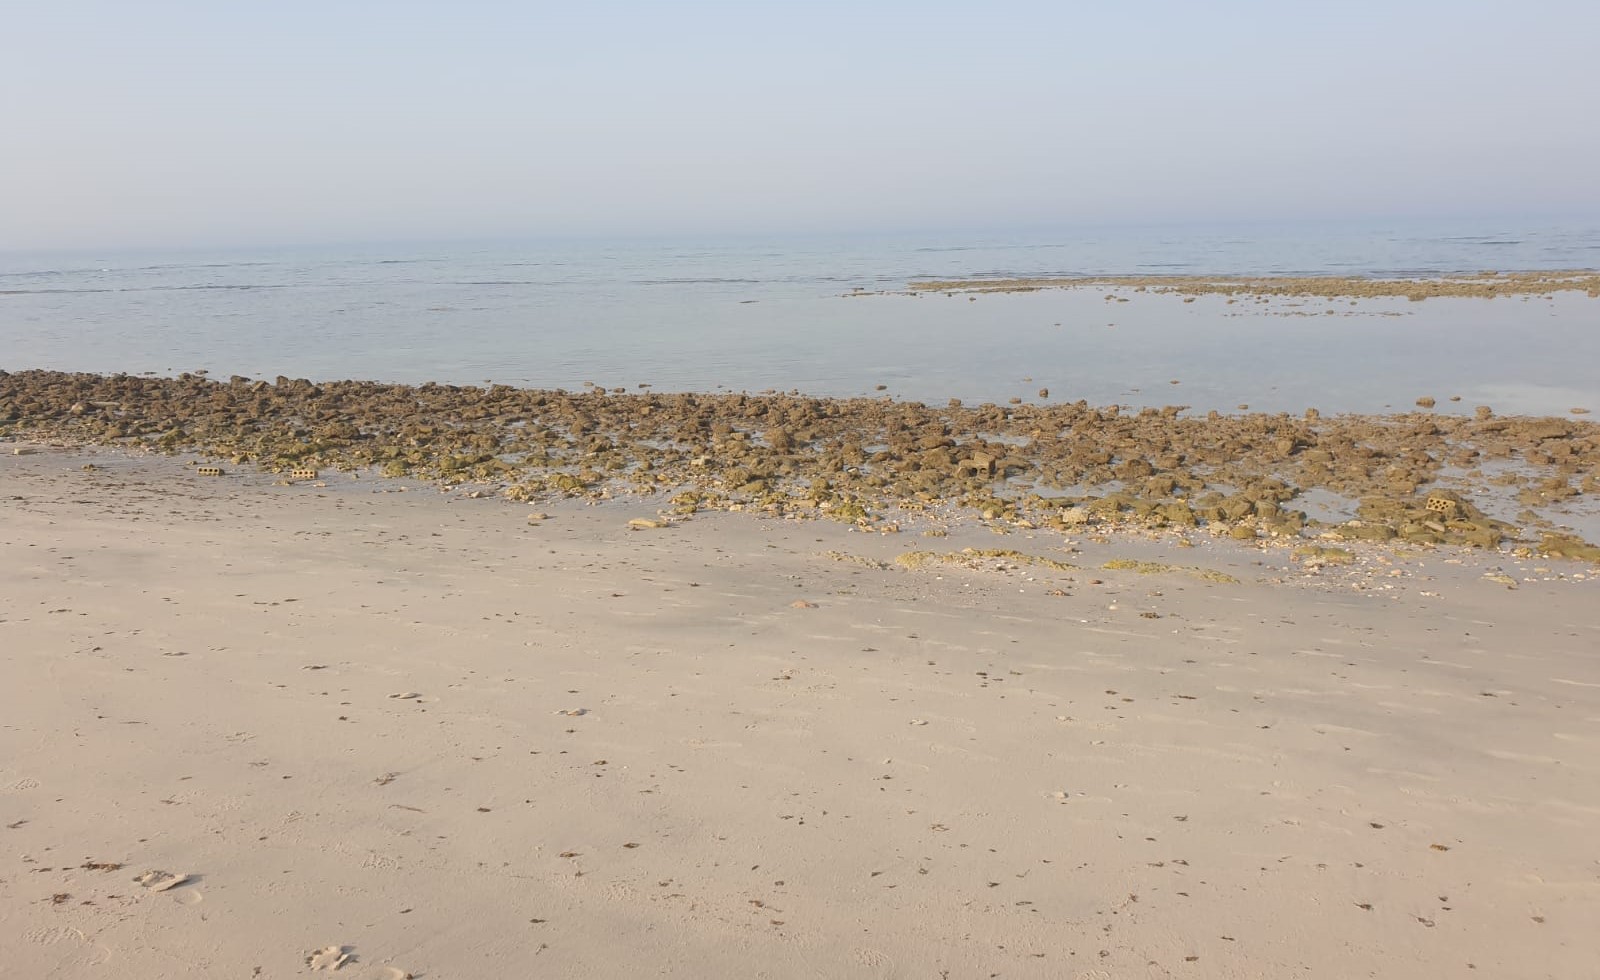  شاطئ أبو الحصانية بعد منع المعتدين 